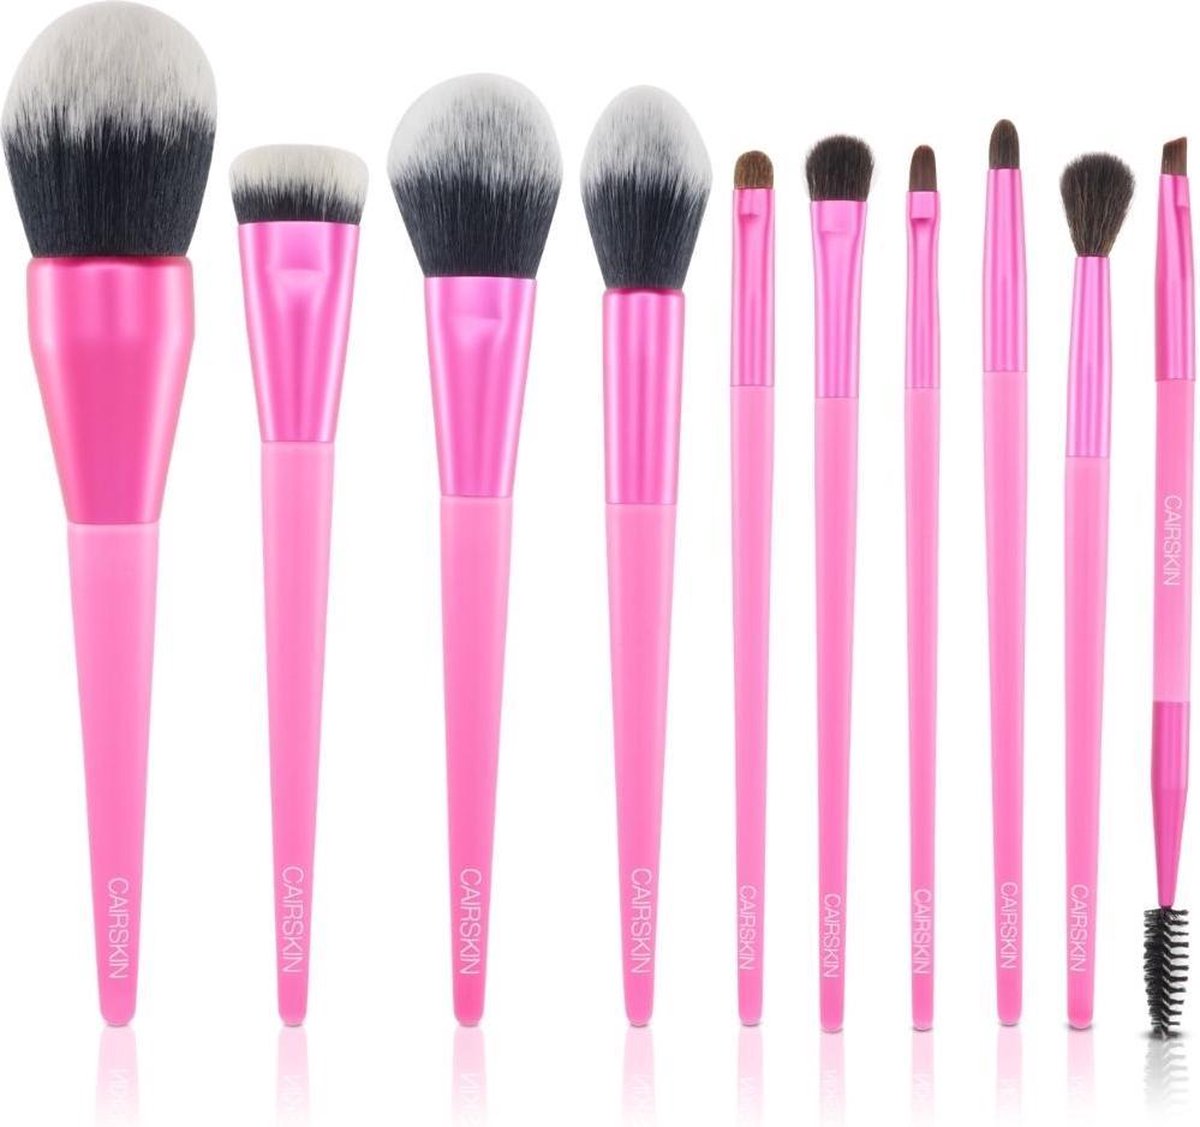 CAIRSKIN Professional Brush Set - 10 Neon Pink Premium Quality Synthetic Brushes - Professionele Kwasten - Set Synthetische Penselen - Vegan Brushes Gezicht / Eyeliner / Oogschaduw / Wenkbrauwen - Volledige Makeup Kwastenset - Vegan Cruelty Free